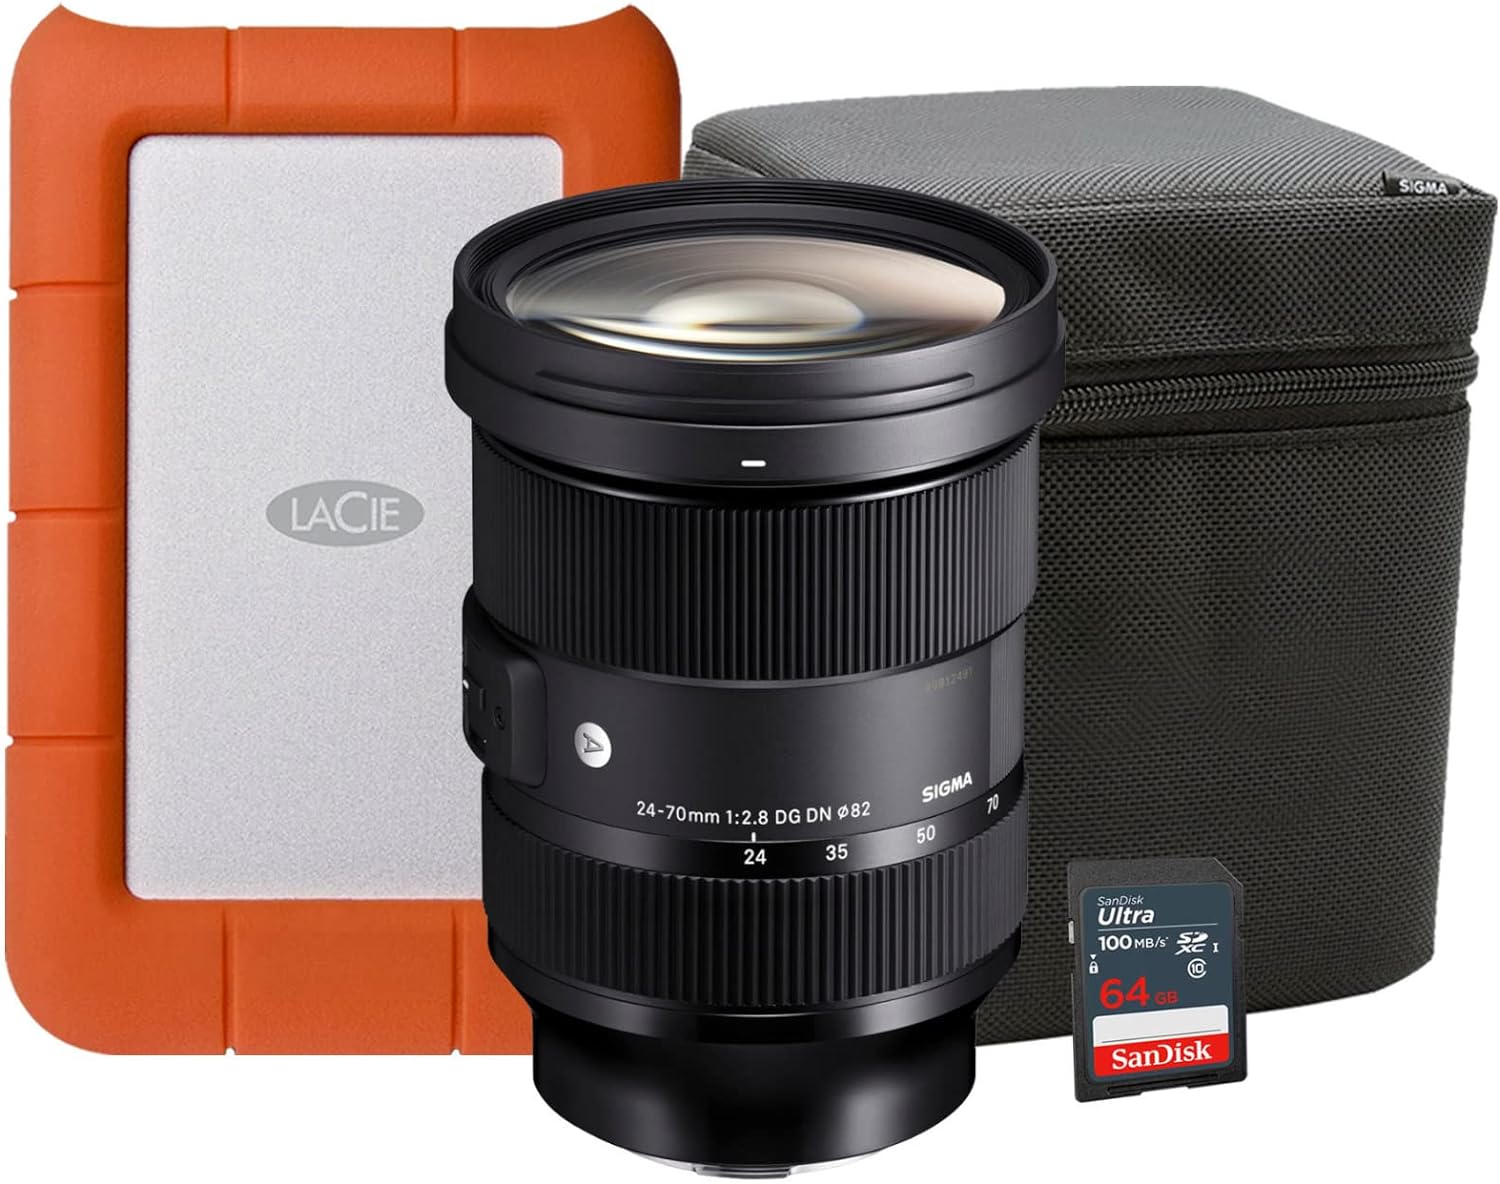 Sigma 24-70mm f/2.8 DG DN Art Zoom Lens Bundle: A Comprehensive Review